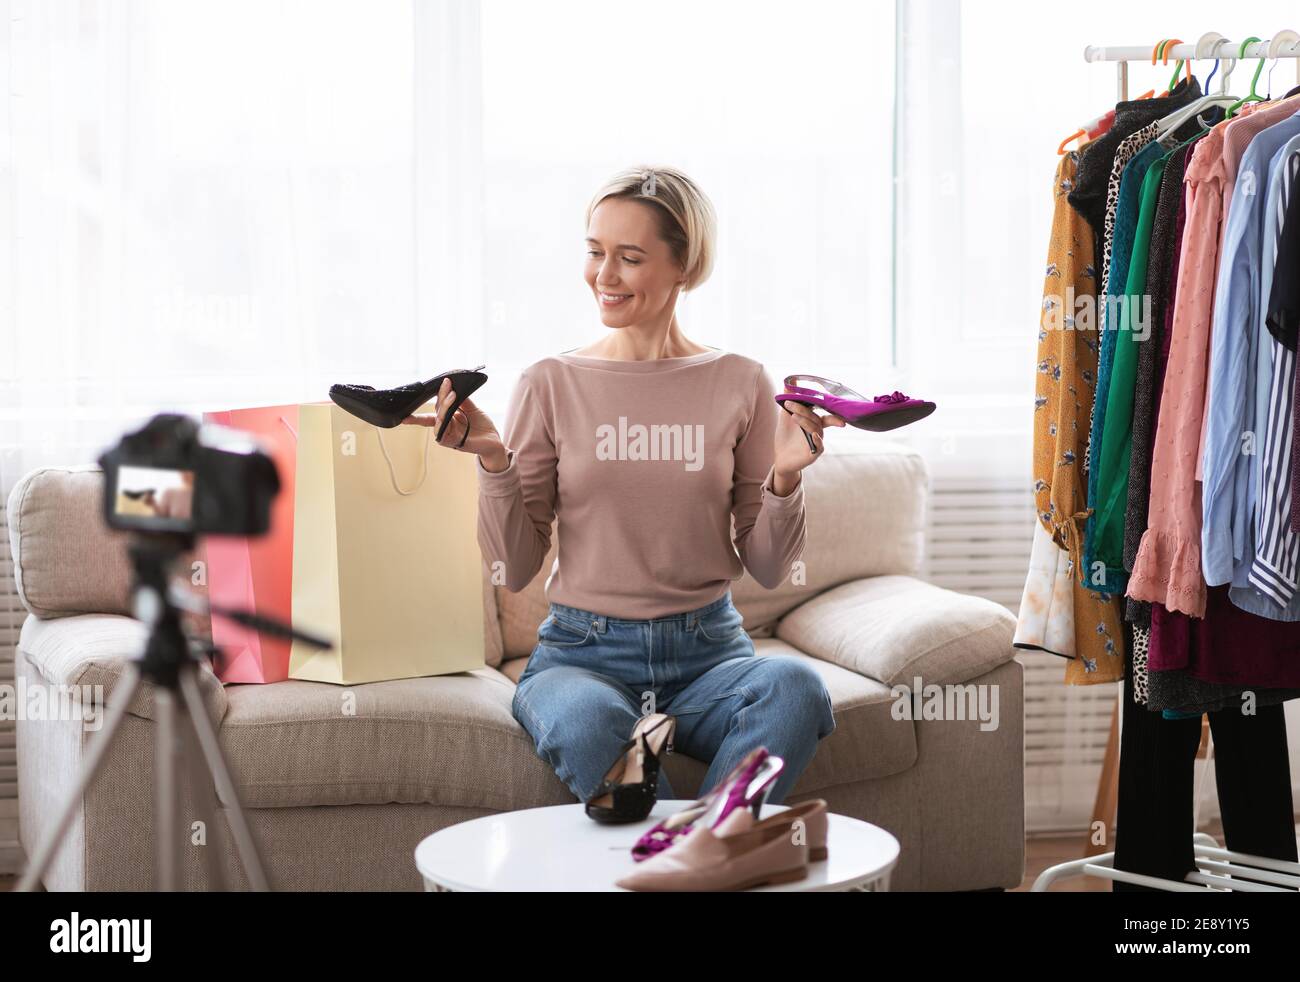 Vidéo de mode. Un influenceur célèbre sur les réseaux sociaux annonçant la nouvelle collection de chaussures devant un appareil photo professionnel Banque D'Images